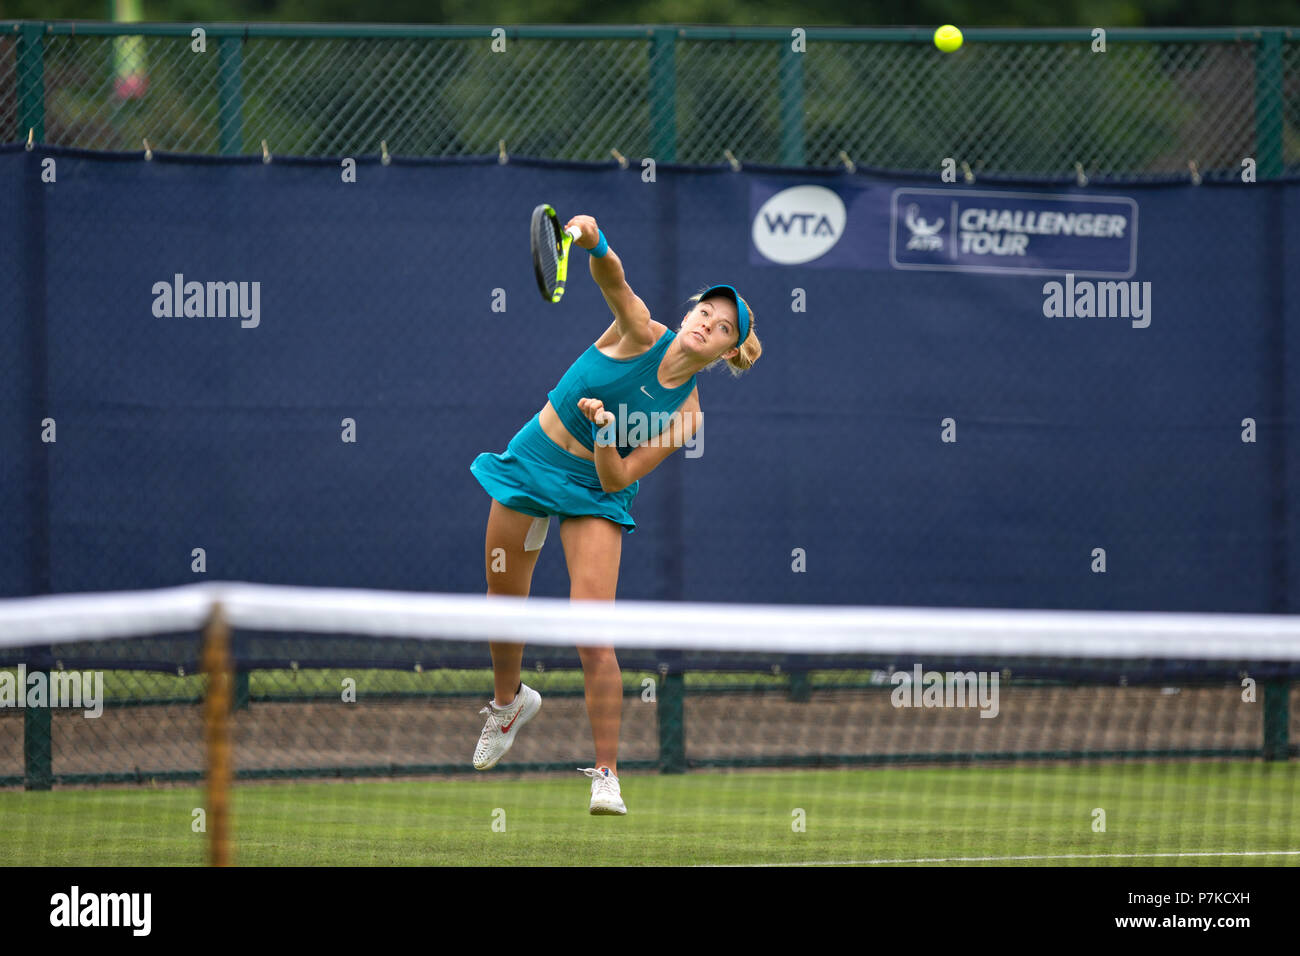 Katie Swan, joueur de tennis britannique, professionnelle dans le milieu d'un servir lors d'un match à l'Open Nature Valley 2018. Swan est représenté dans l'air avec le ballon, visible dans shot, ayant quitté sa raquette. Banque D'Images